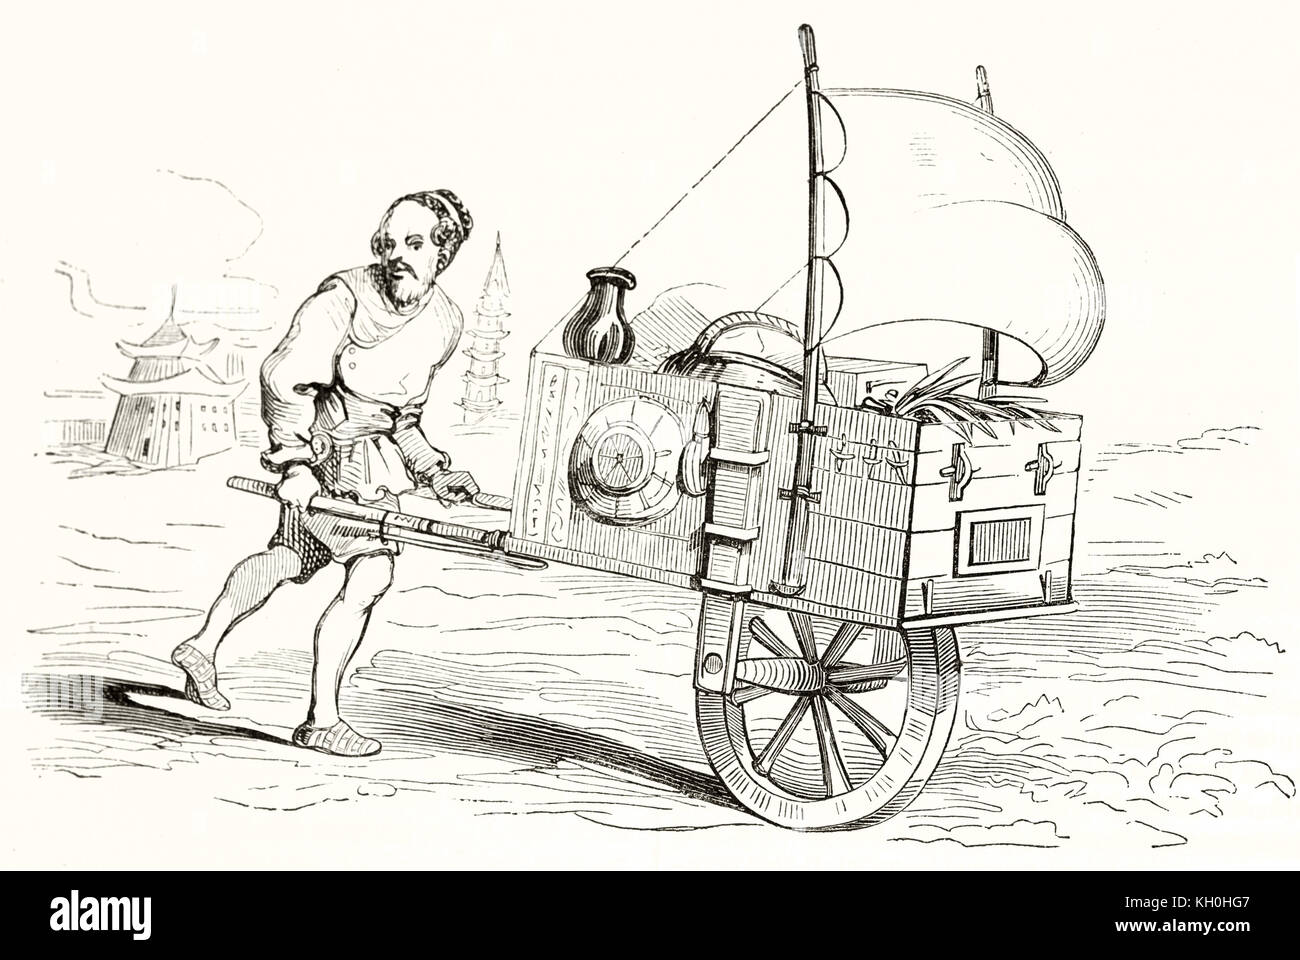 Alte Abbildung eines Segels angetriebene Schubkarre. Von unbekannter Autor, Hrsg. auf Magasin Pittoresque, Paris, 1847 Stockfoto